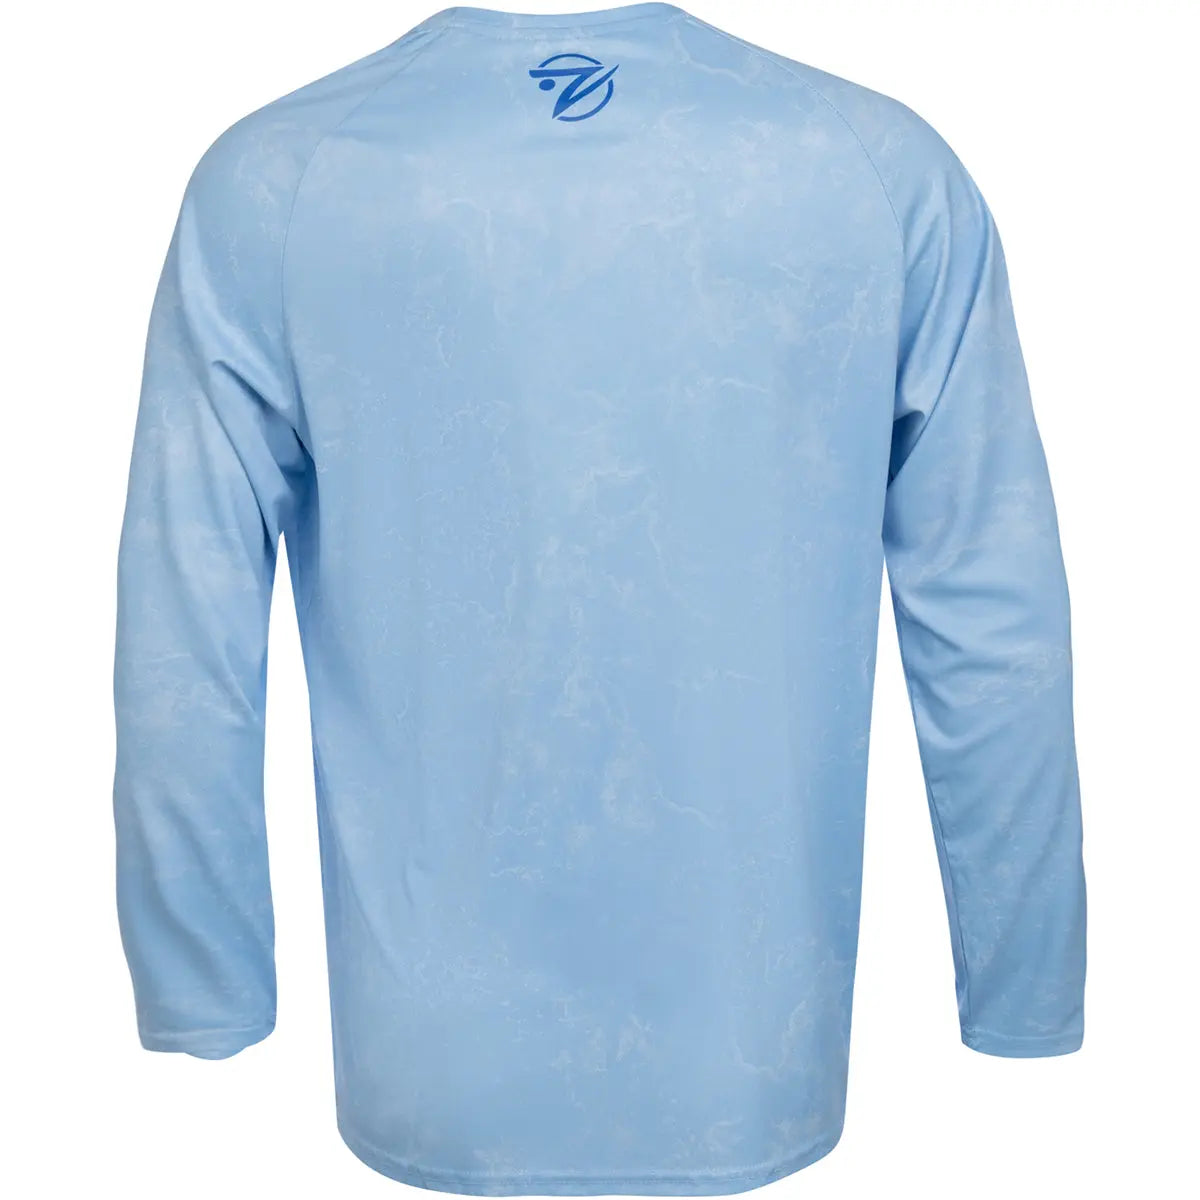 Gillz Contender Series ASSLT UV Long Sleeve T-Shirt - Powder Blue Gillz